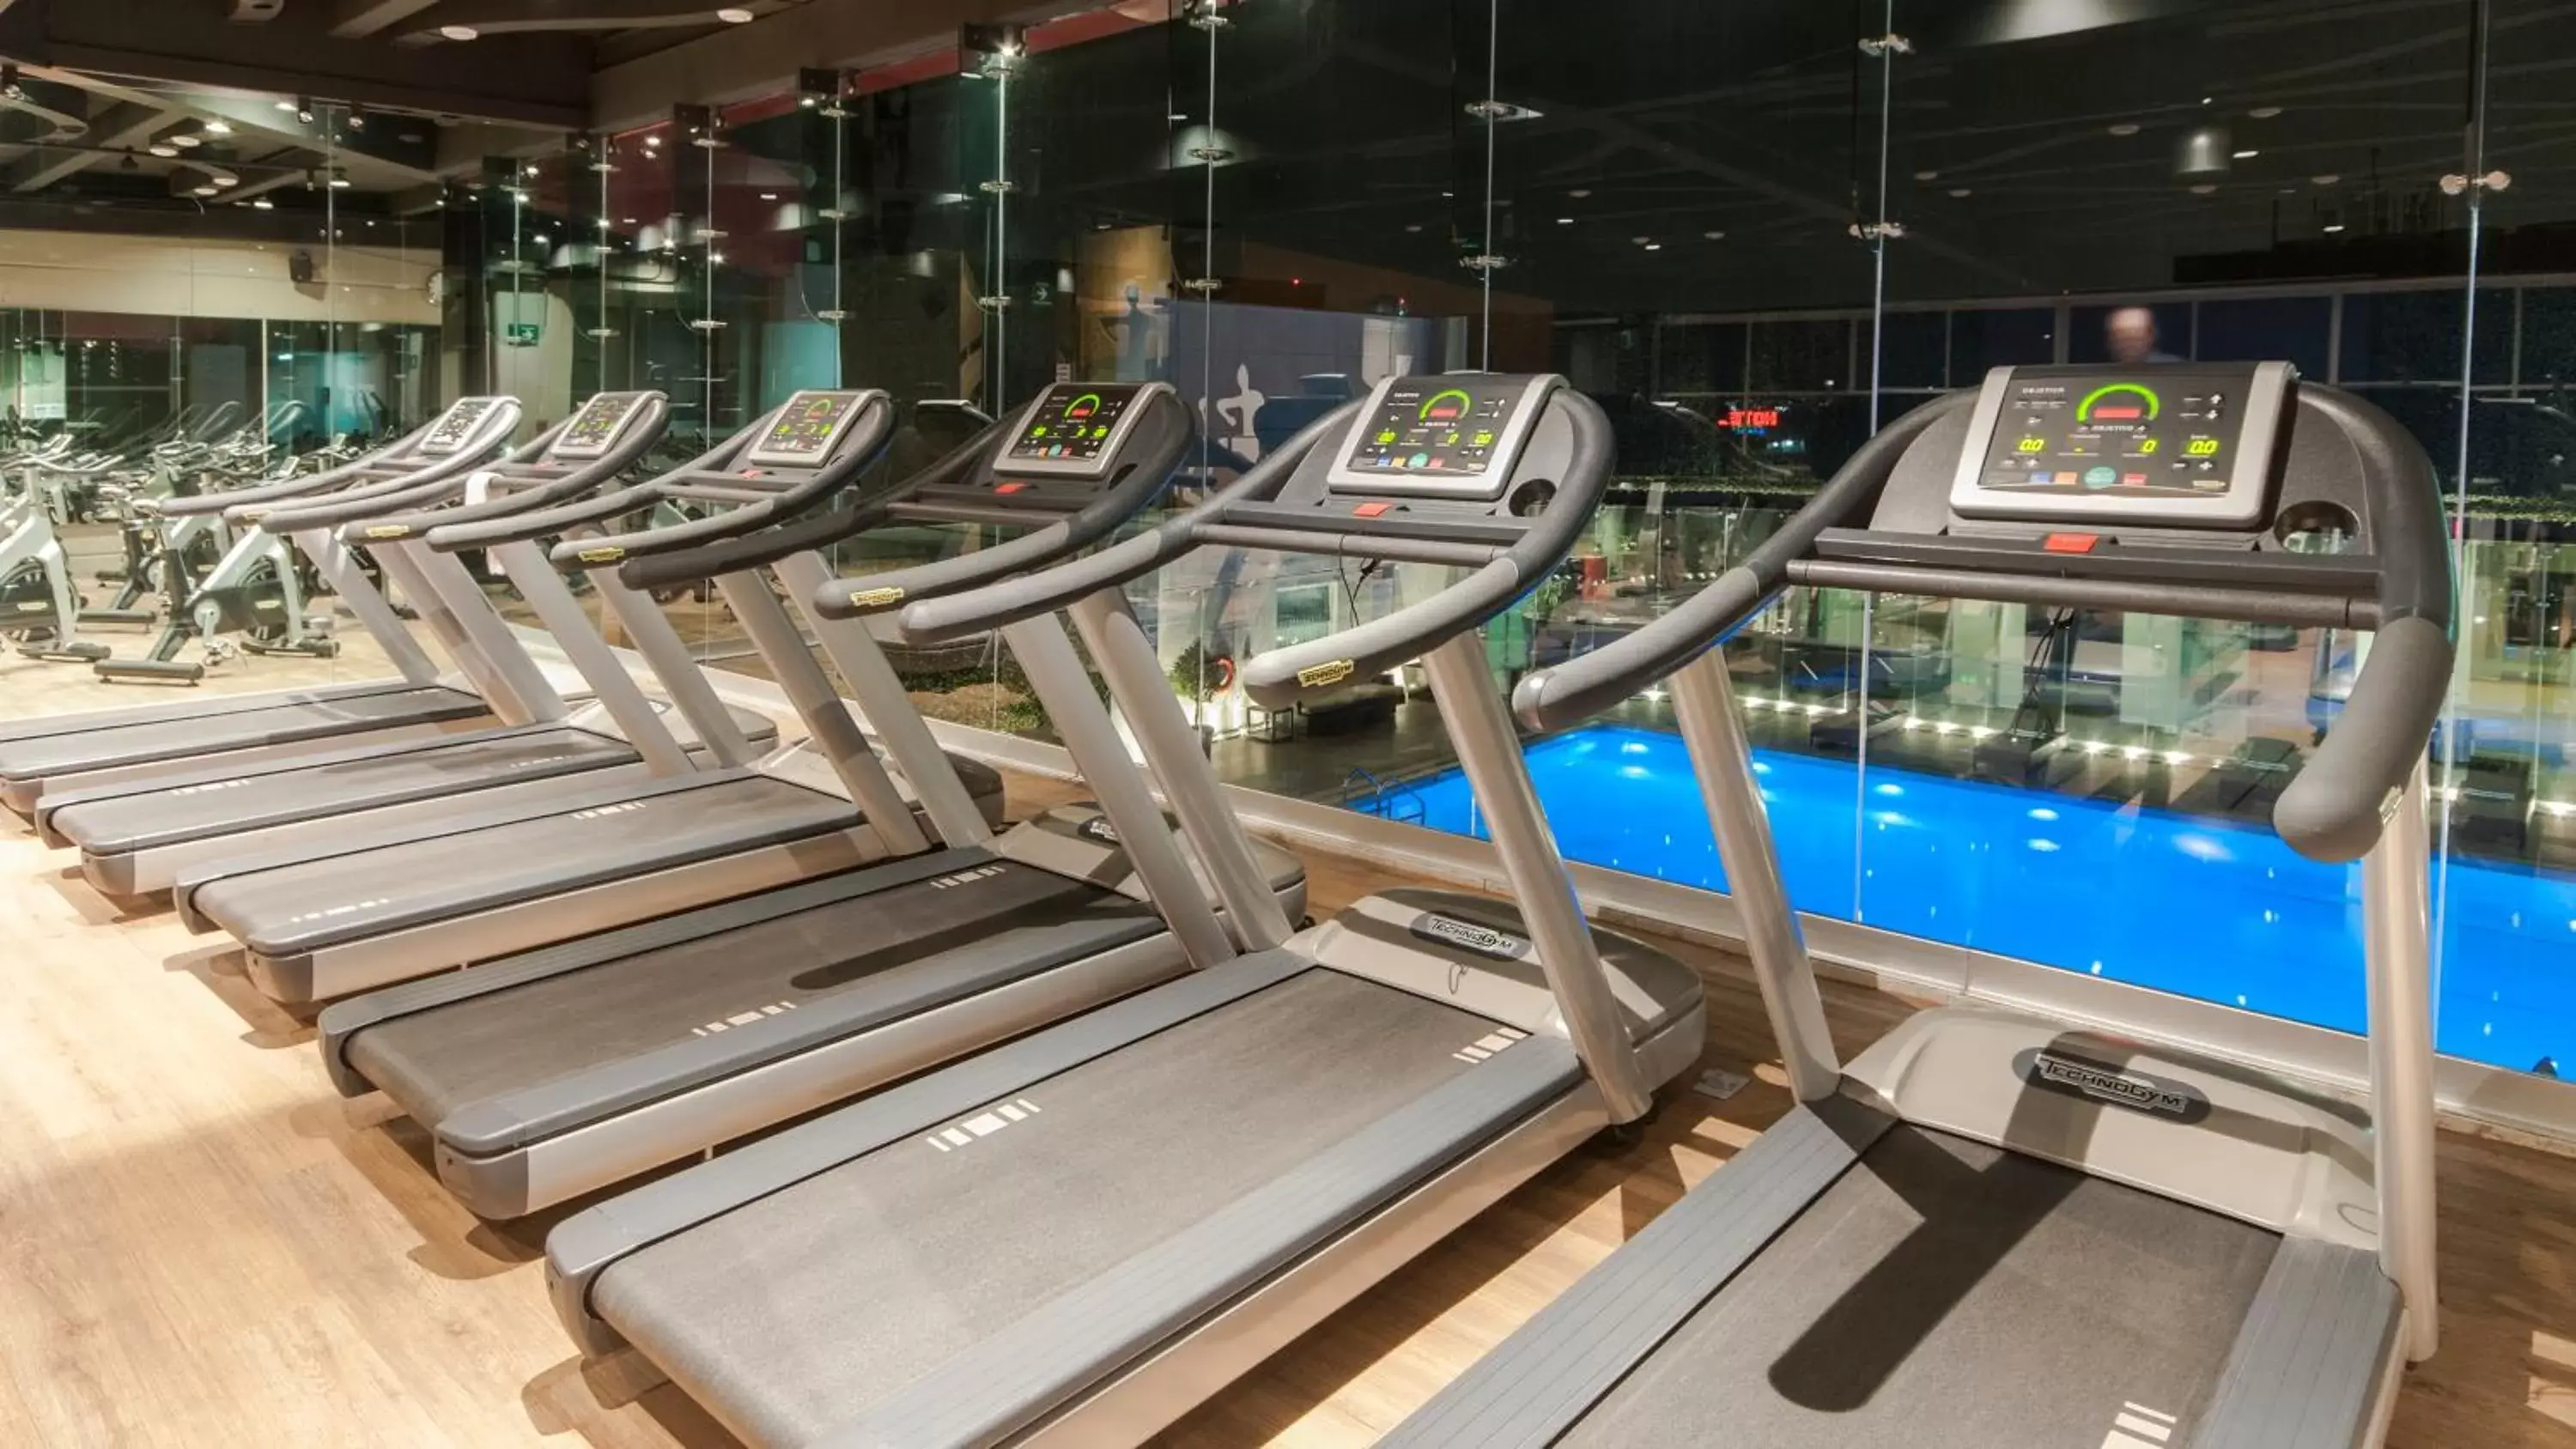 Fitness centre/facilities, Fitness Center/Facilities in Holiday Inn Buenavista, an IHG Hotel